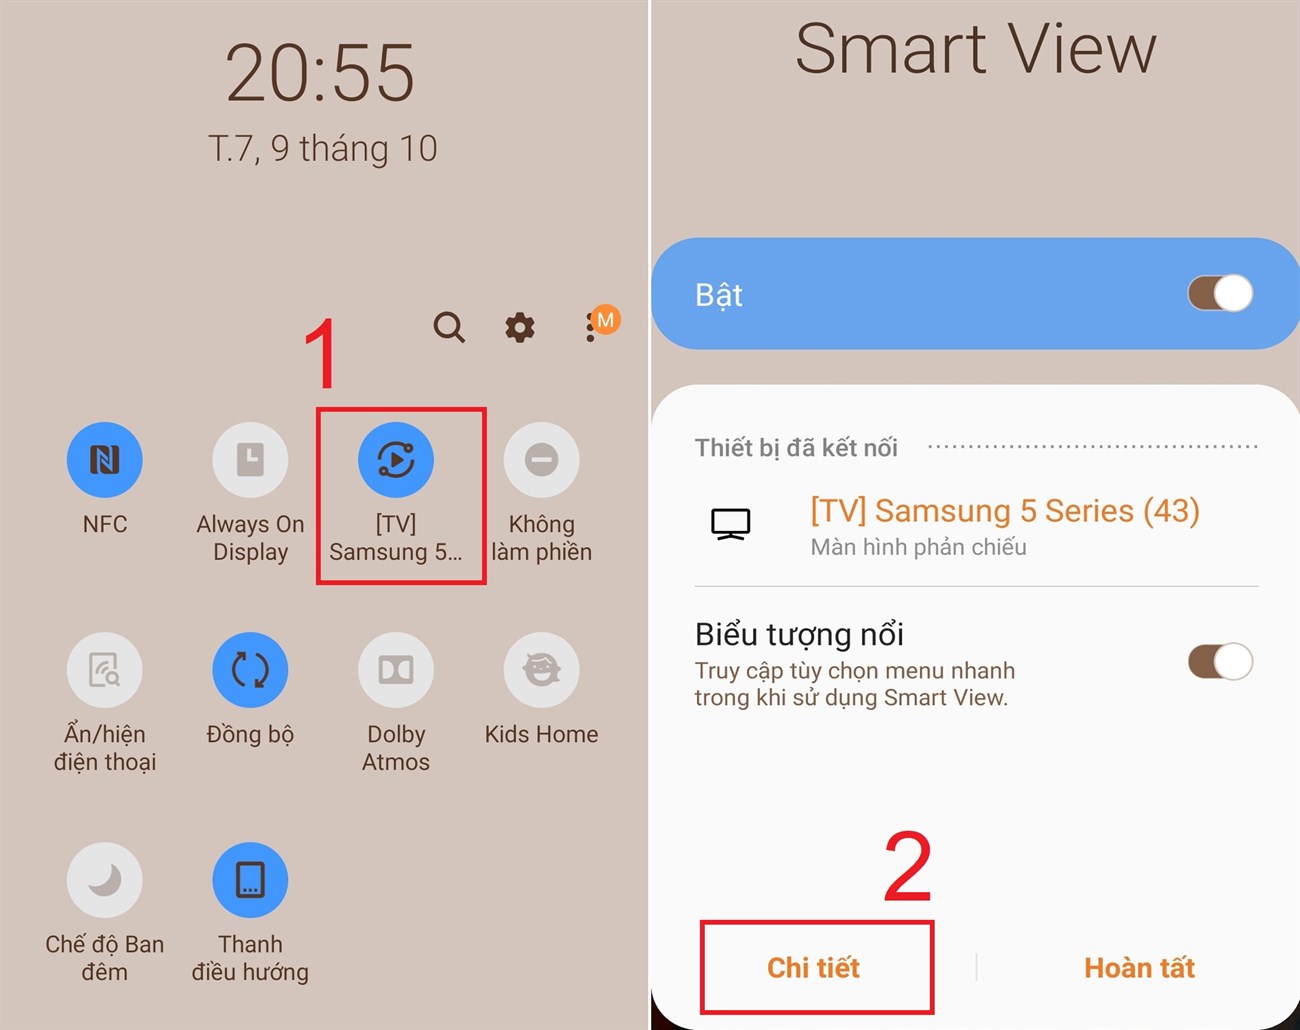 Smart View là gì? Cách sử dụng tính năng Smart View trên tivi Samsung mới nhất